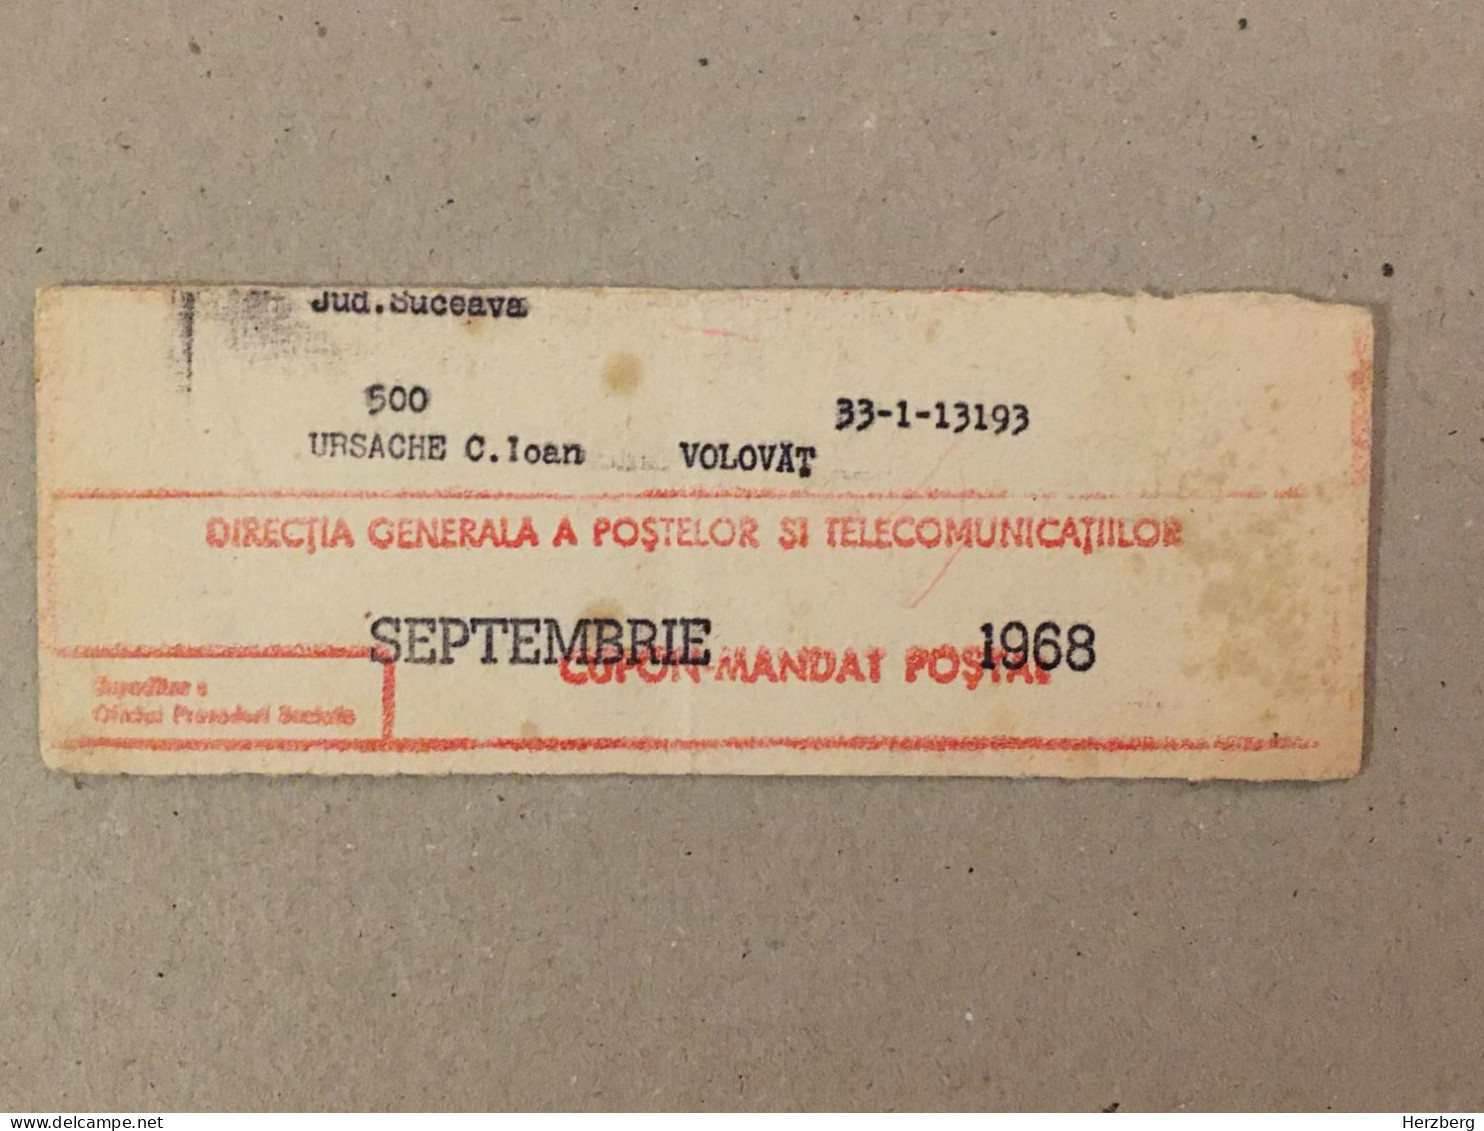 Romania Rumanien Roumanie - Cupon Mandat Postal Coupon Mandate Postauftrag - Suceava 1968 - Cartas & Documentos